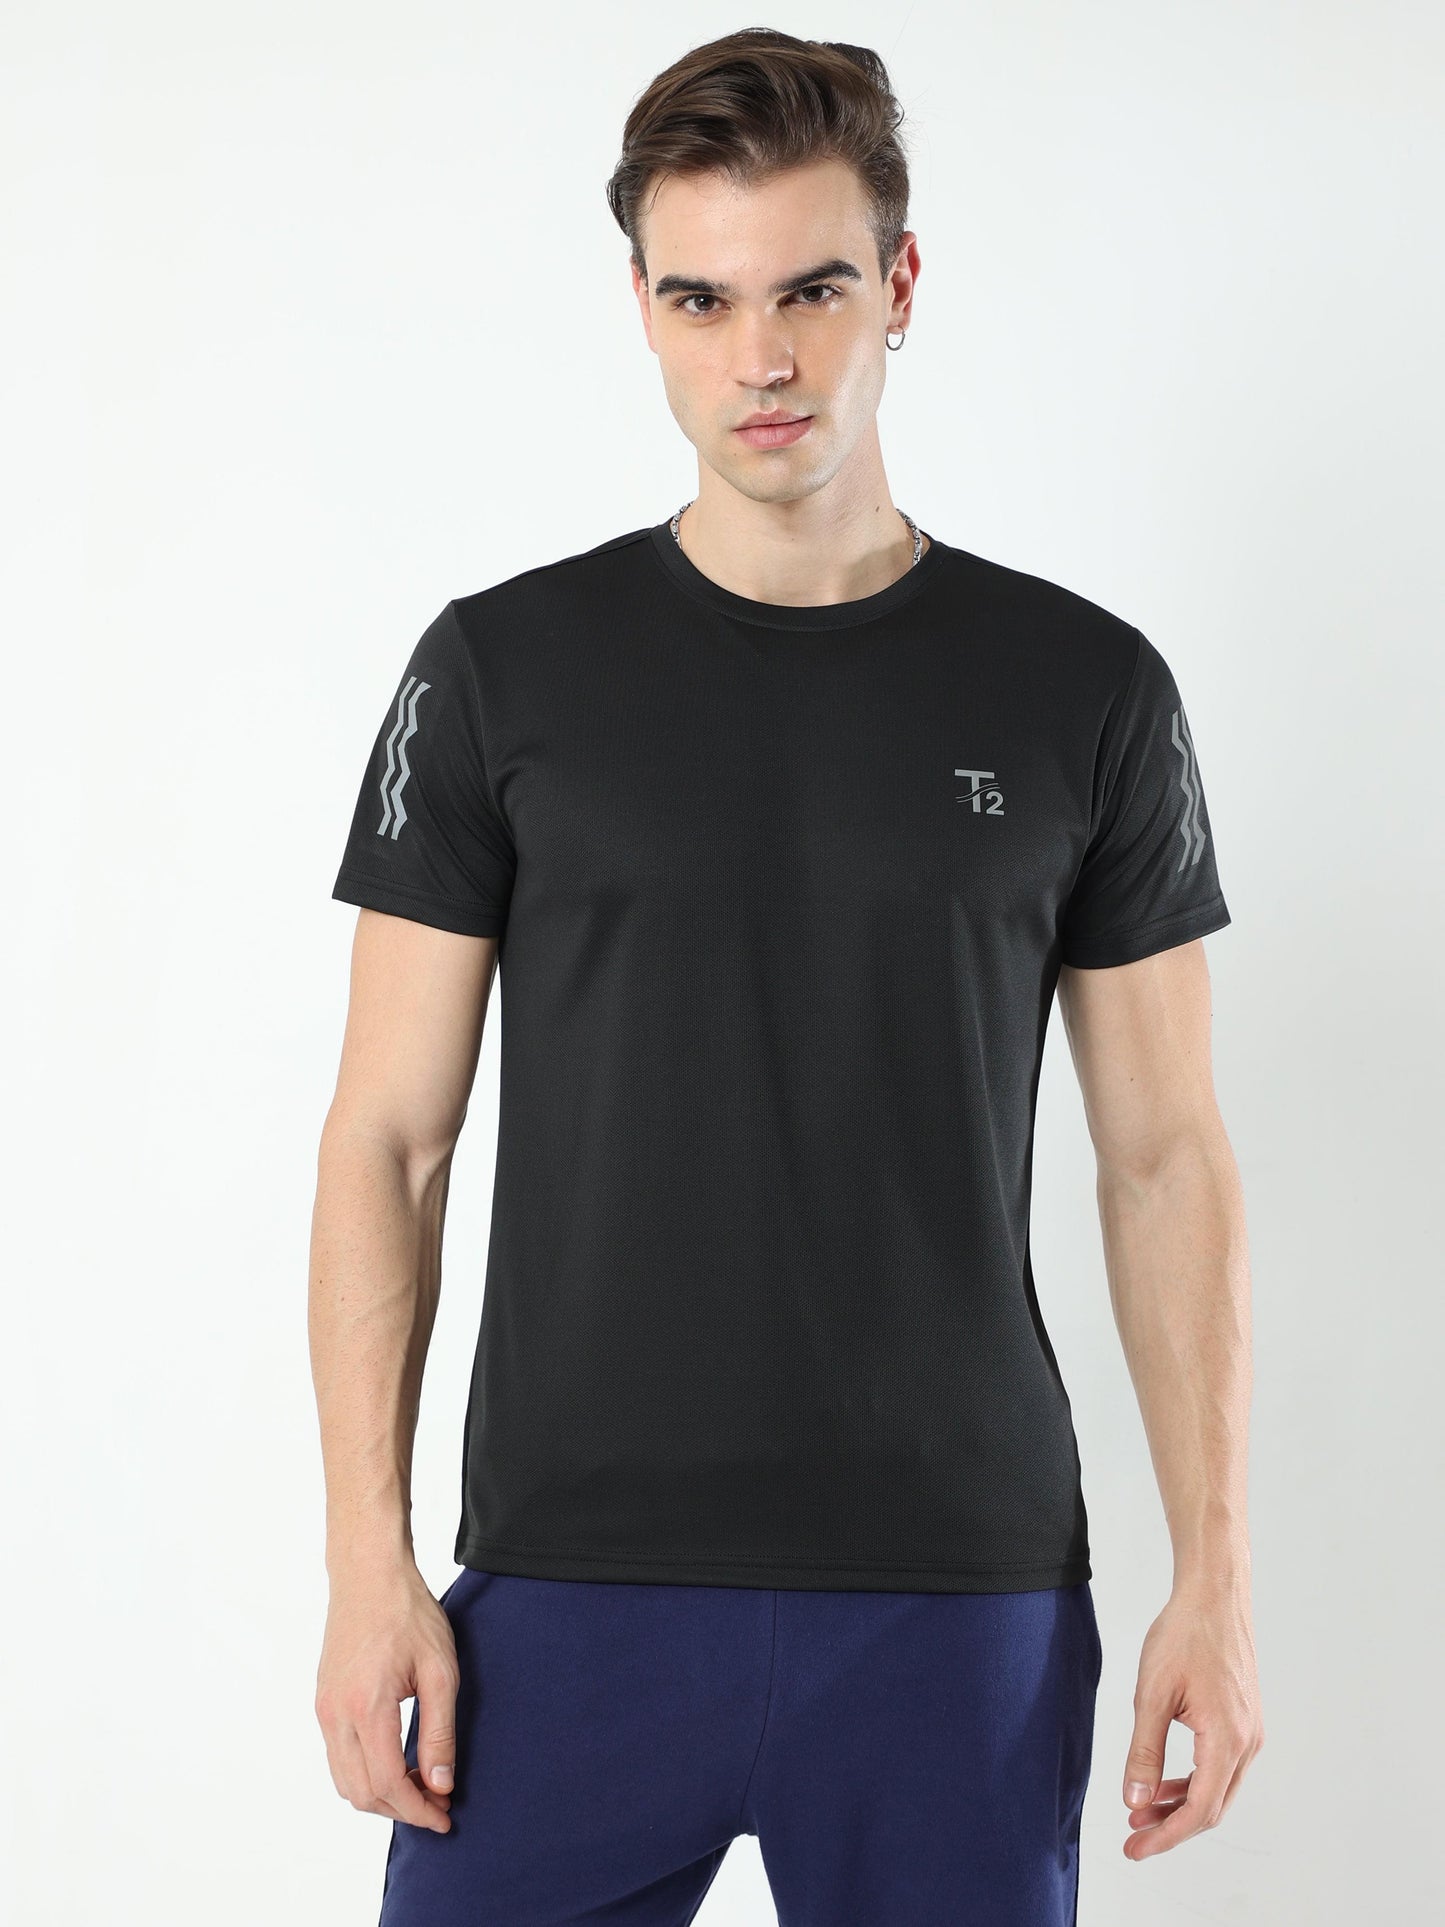 Athleisure Men's Premium T-Shirt - Black